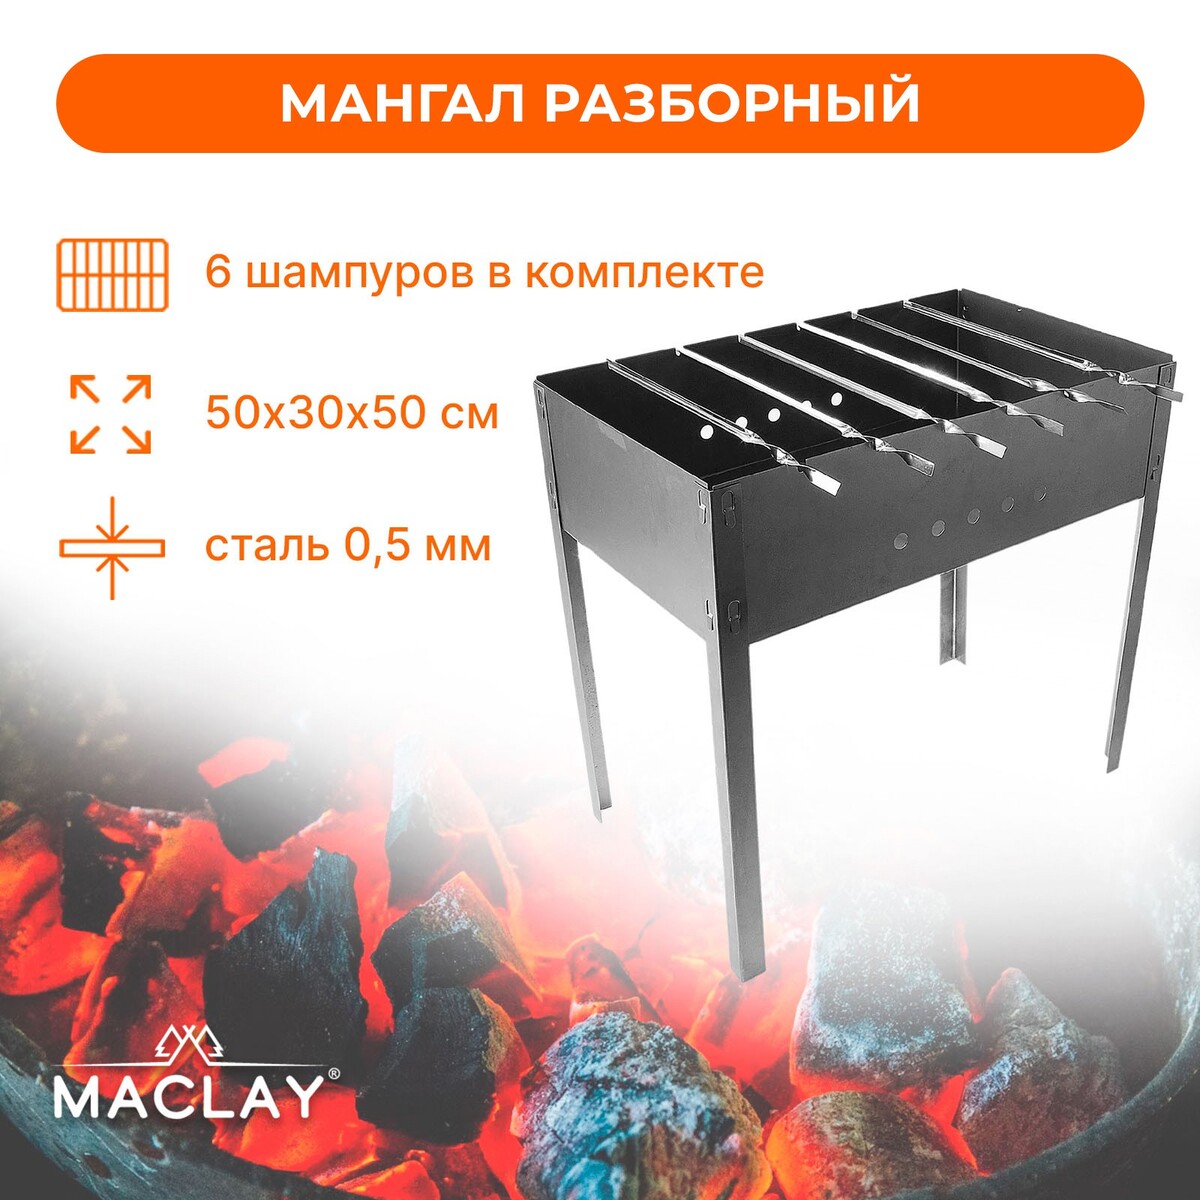 Мангал maclay мангал 500х300х140 мм 1 2 мм разборный 5 шампуров